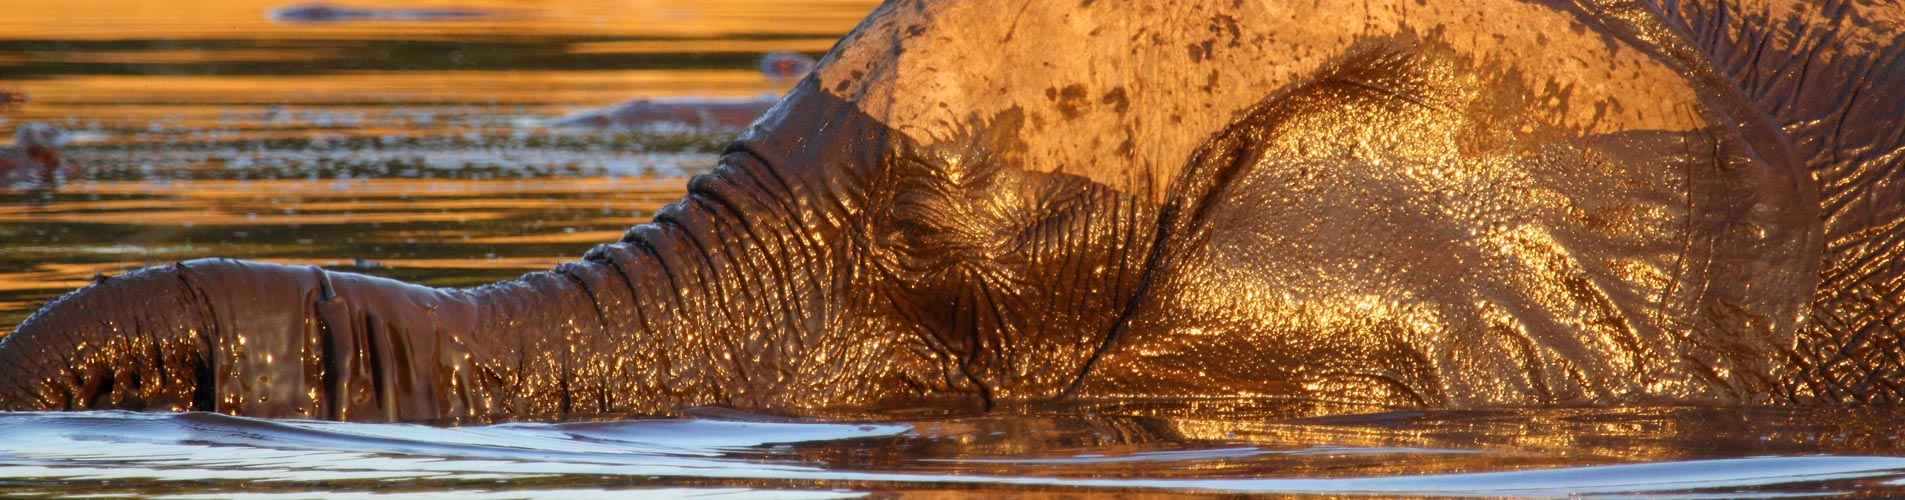 Zimbabwe Safari Muddy Elephant